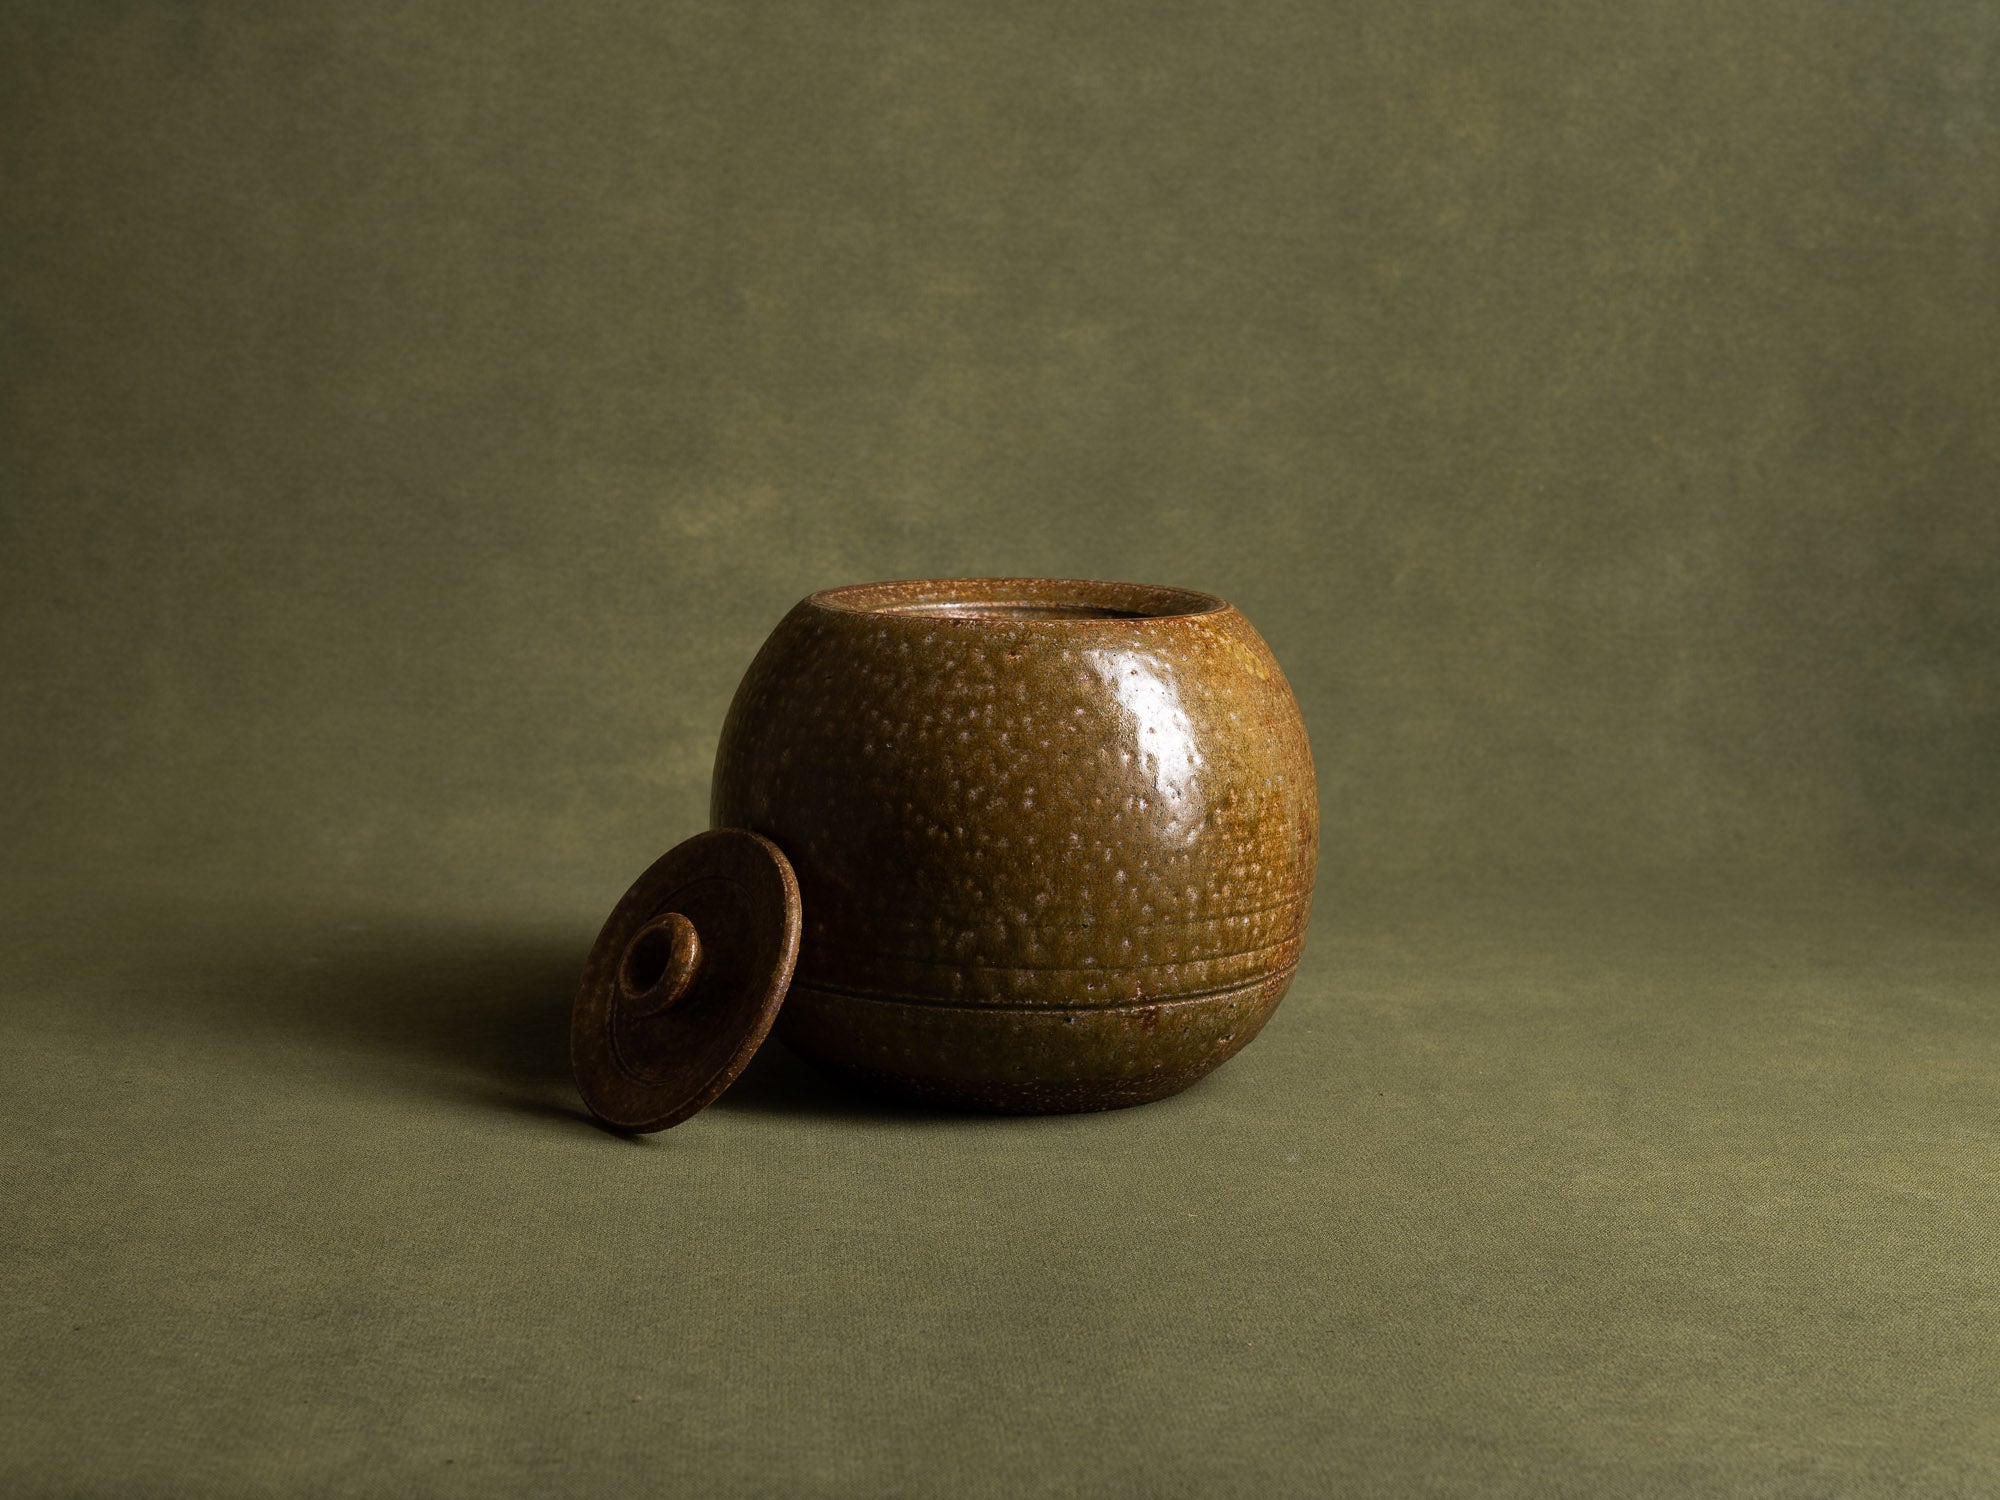 Mizusashi, pot couvert à eau pour la cérémonie du thé, Japon (ére Shōwa)..Seto ware lidded pot, Mizusashi for tea ceremony, Japan (Shōwa Era)